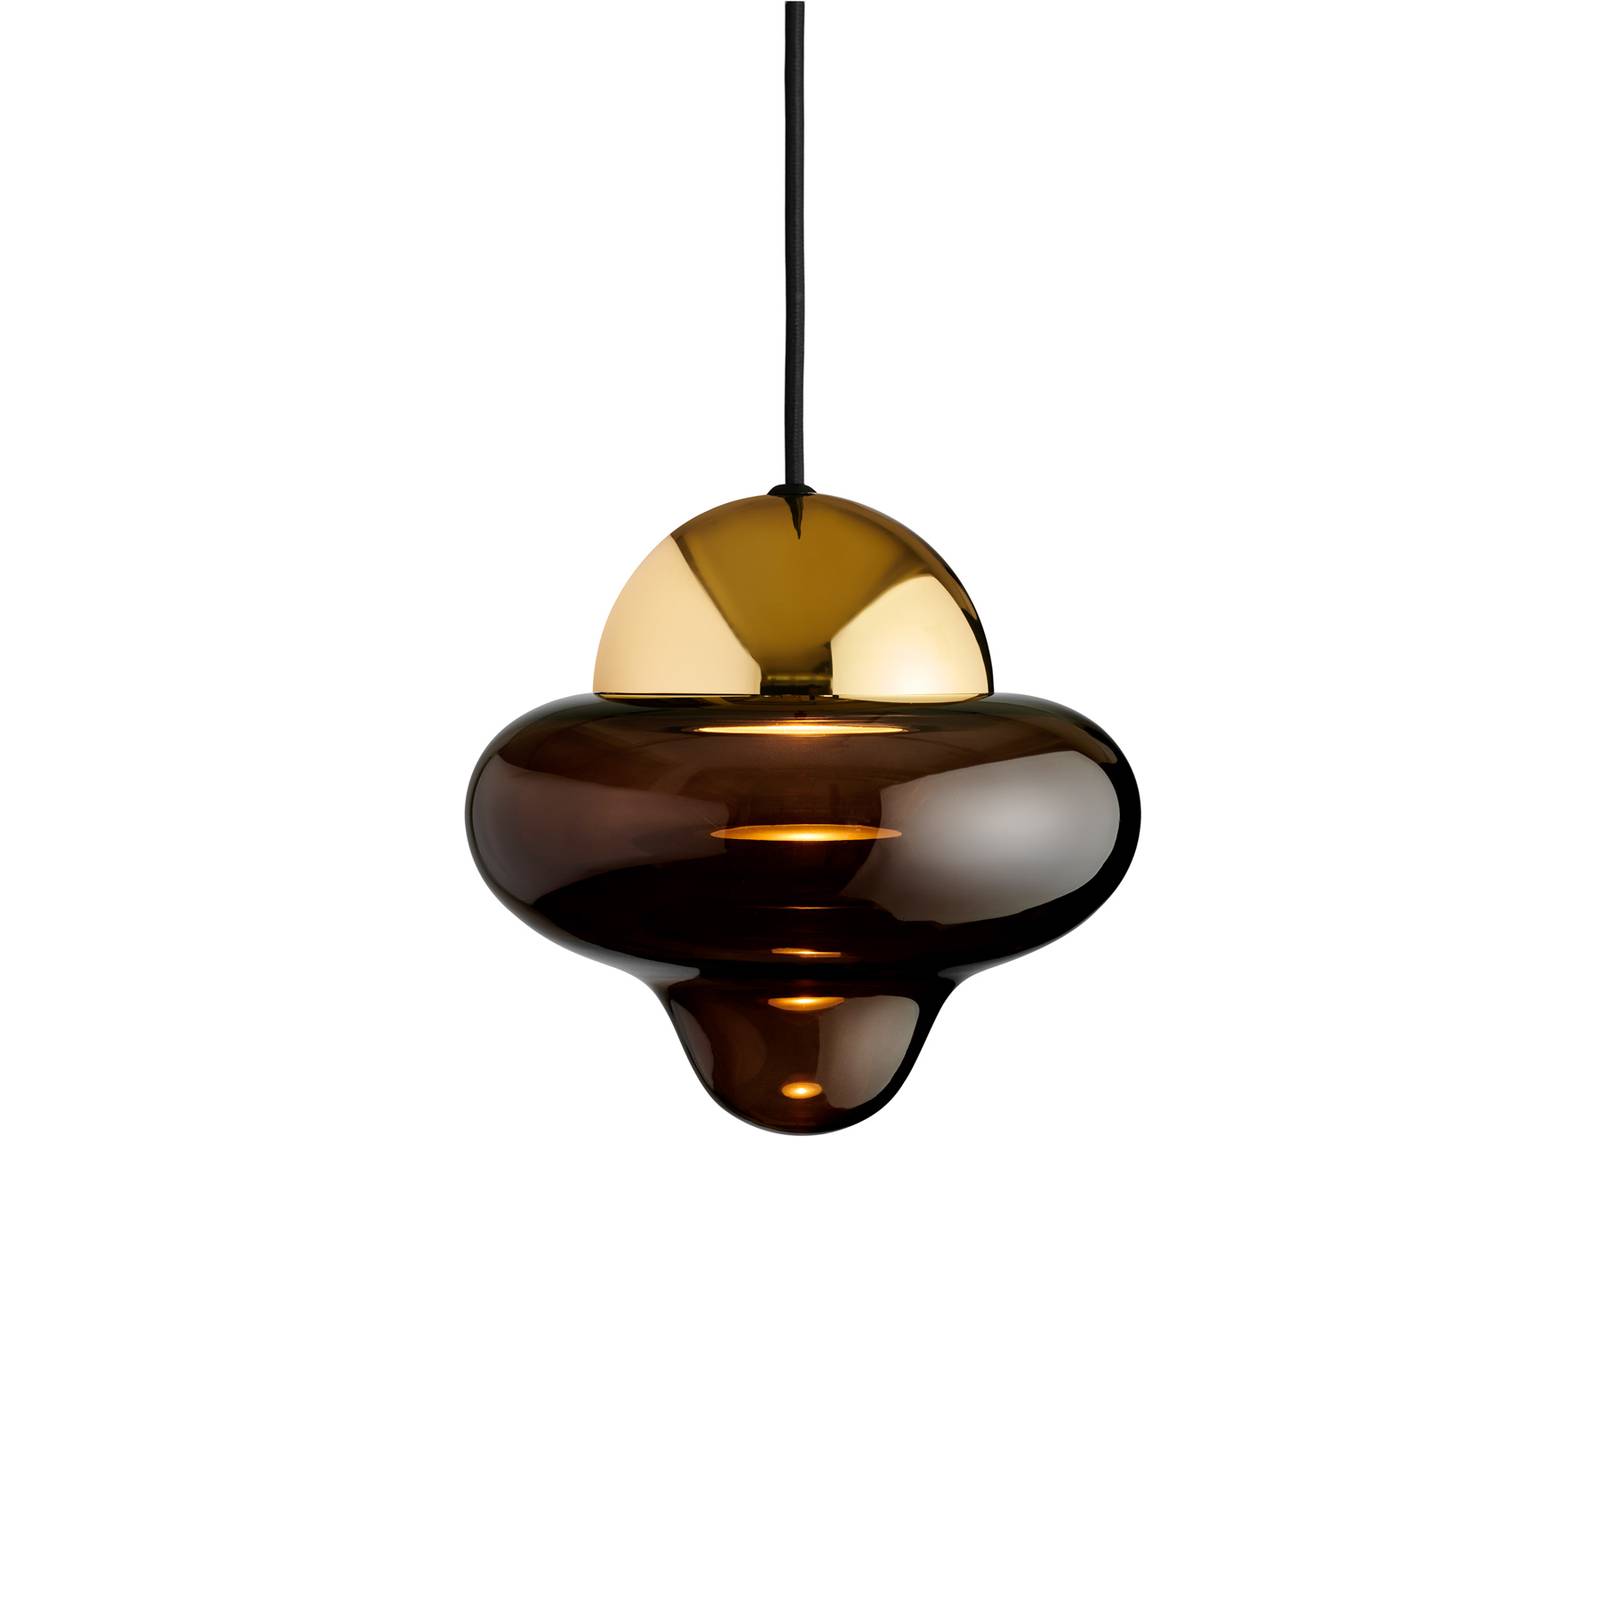 DESIGN BY US Závěsné svítidlo LED Nutty, hnědá / zlatá barva, Ø 18,5 cm, sklo